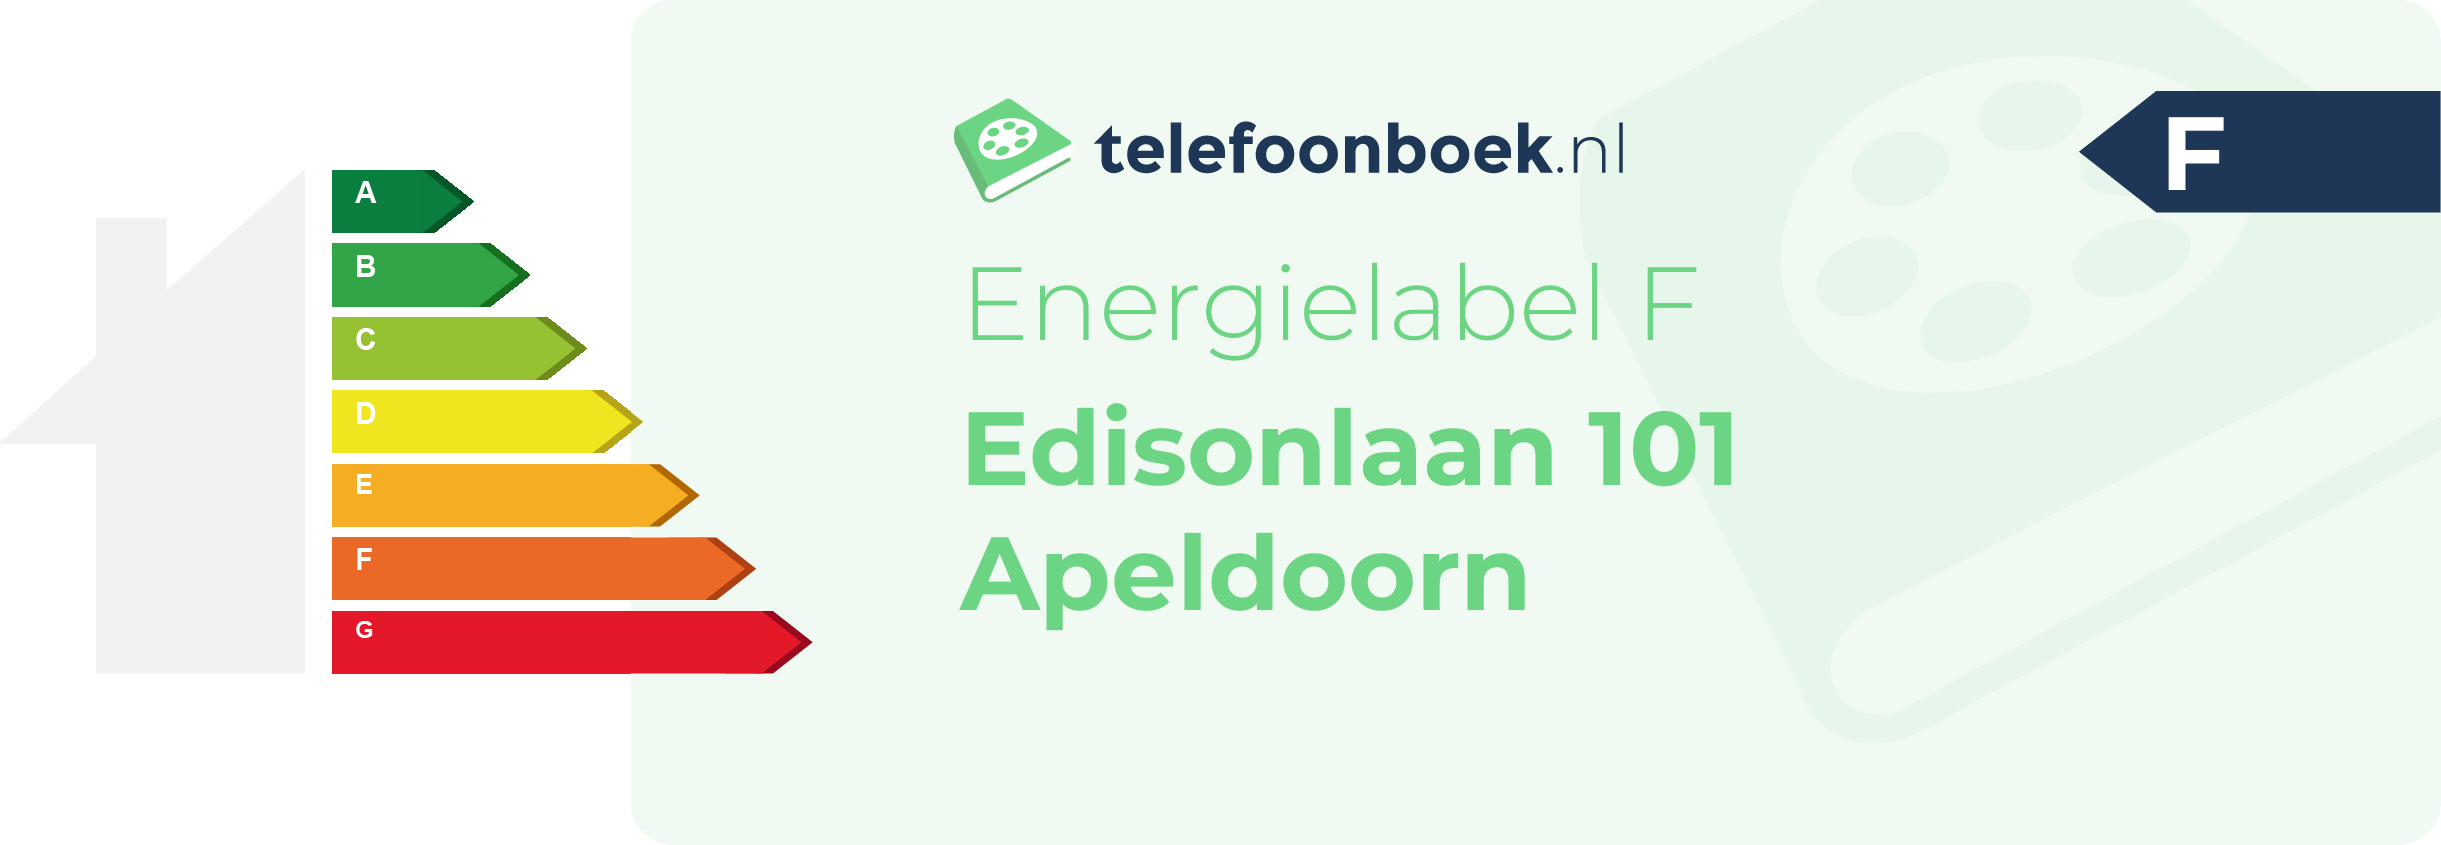 Energielabel Edisonlaan 101 Apeldoorn